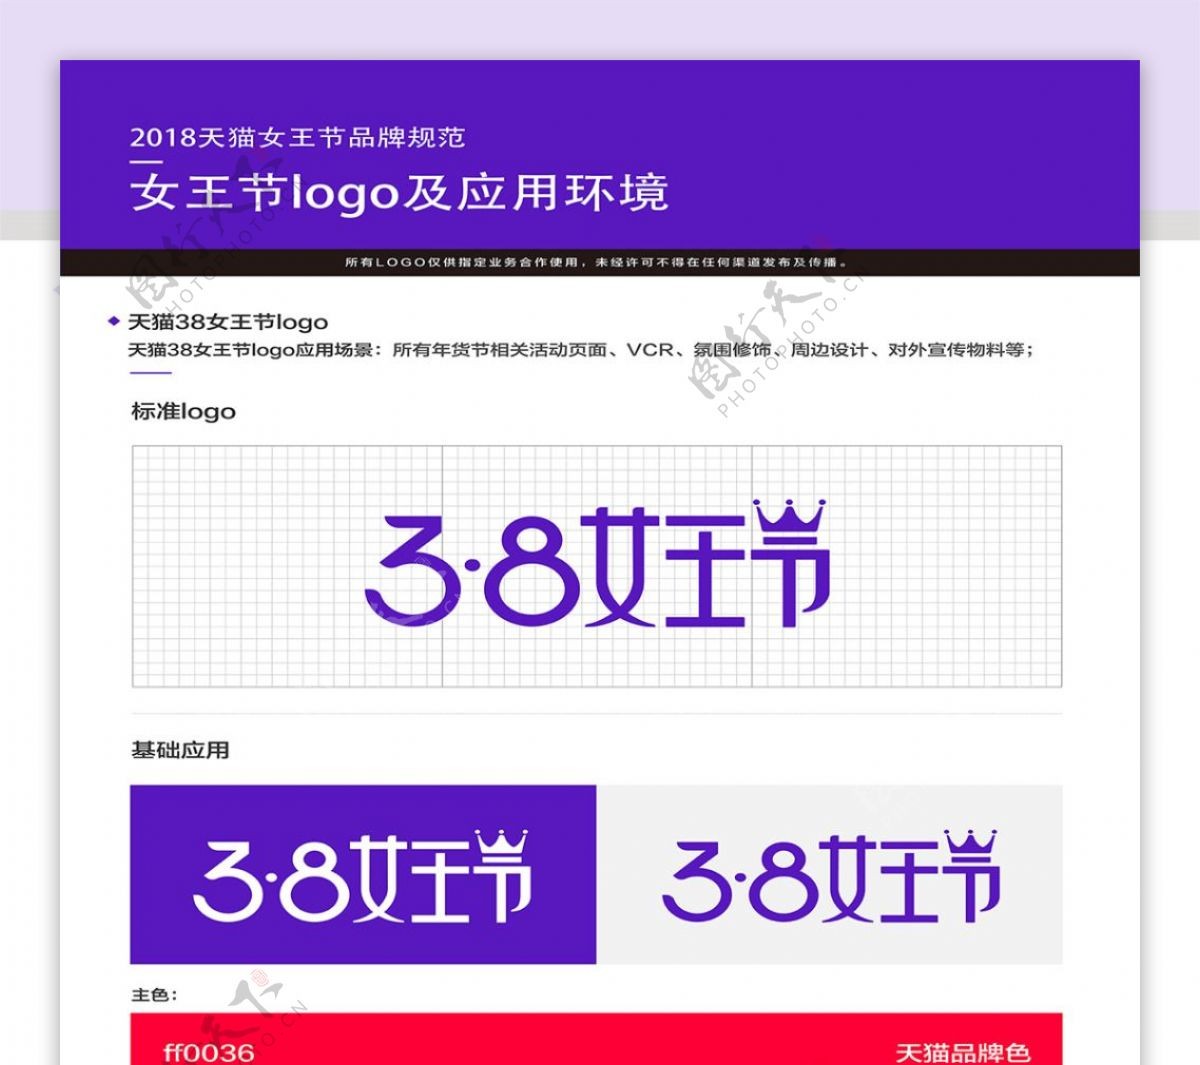 2018天猫女王节LOGO品牌规范